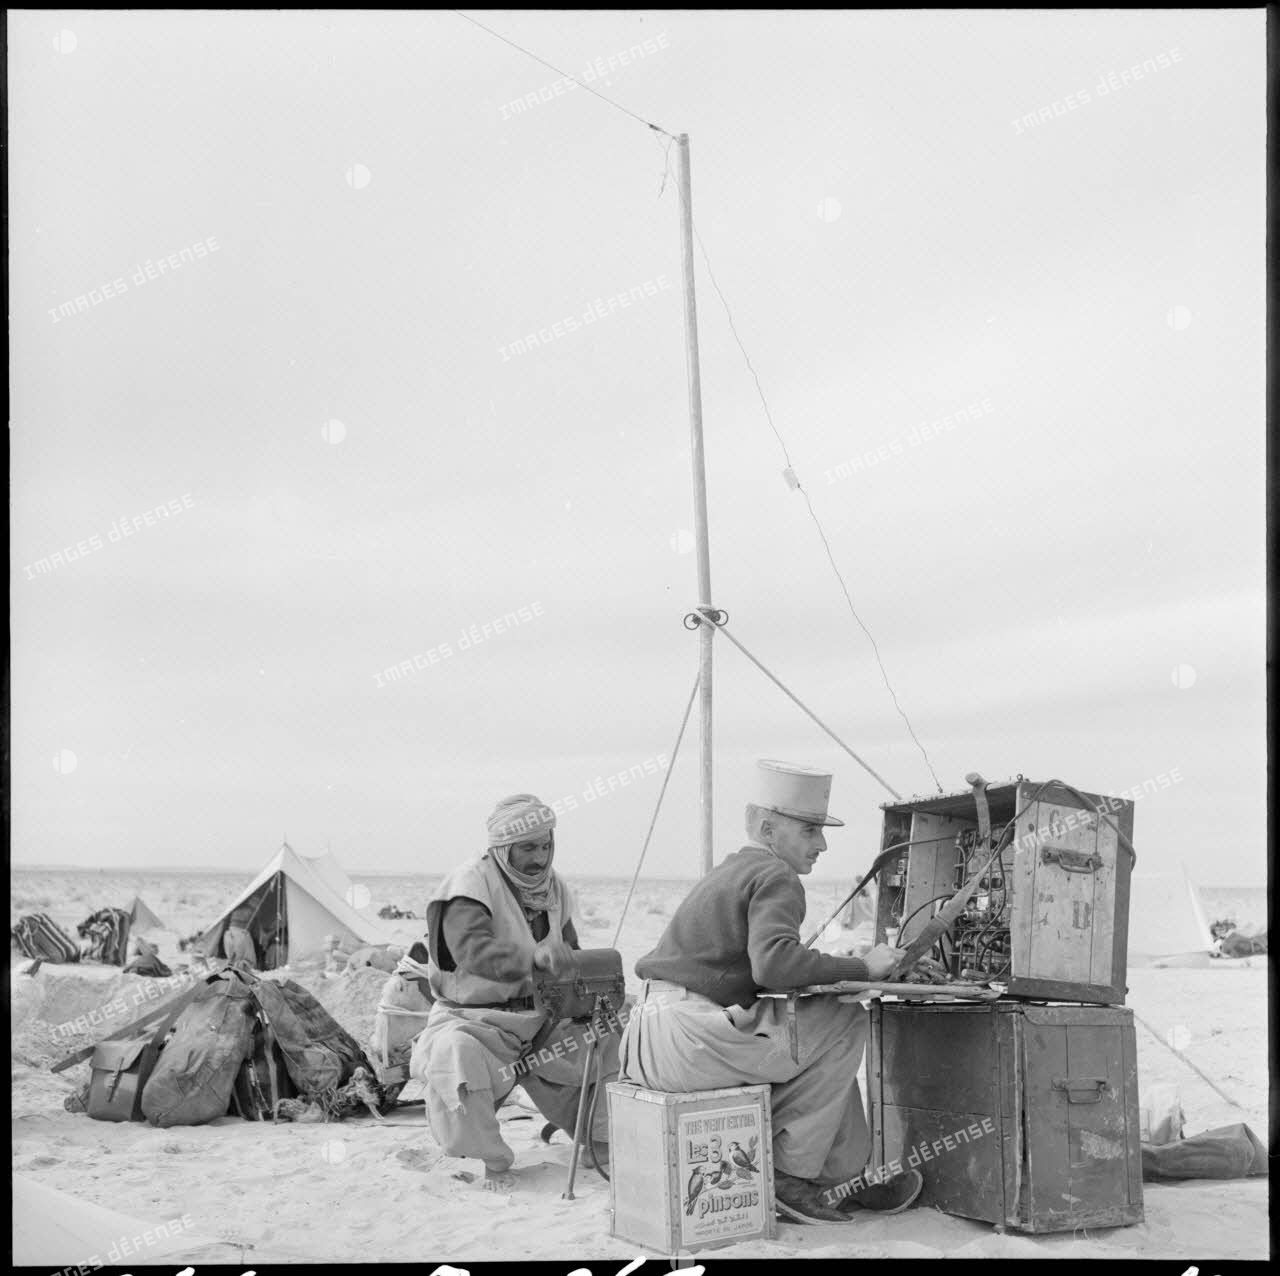 Le lieutenant de la compagnie méhariste de l'erg oriental (CMEO) en mission de transmission dans un campement près d'El Oued.